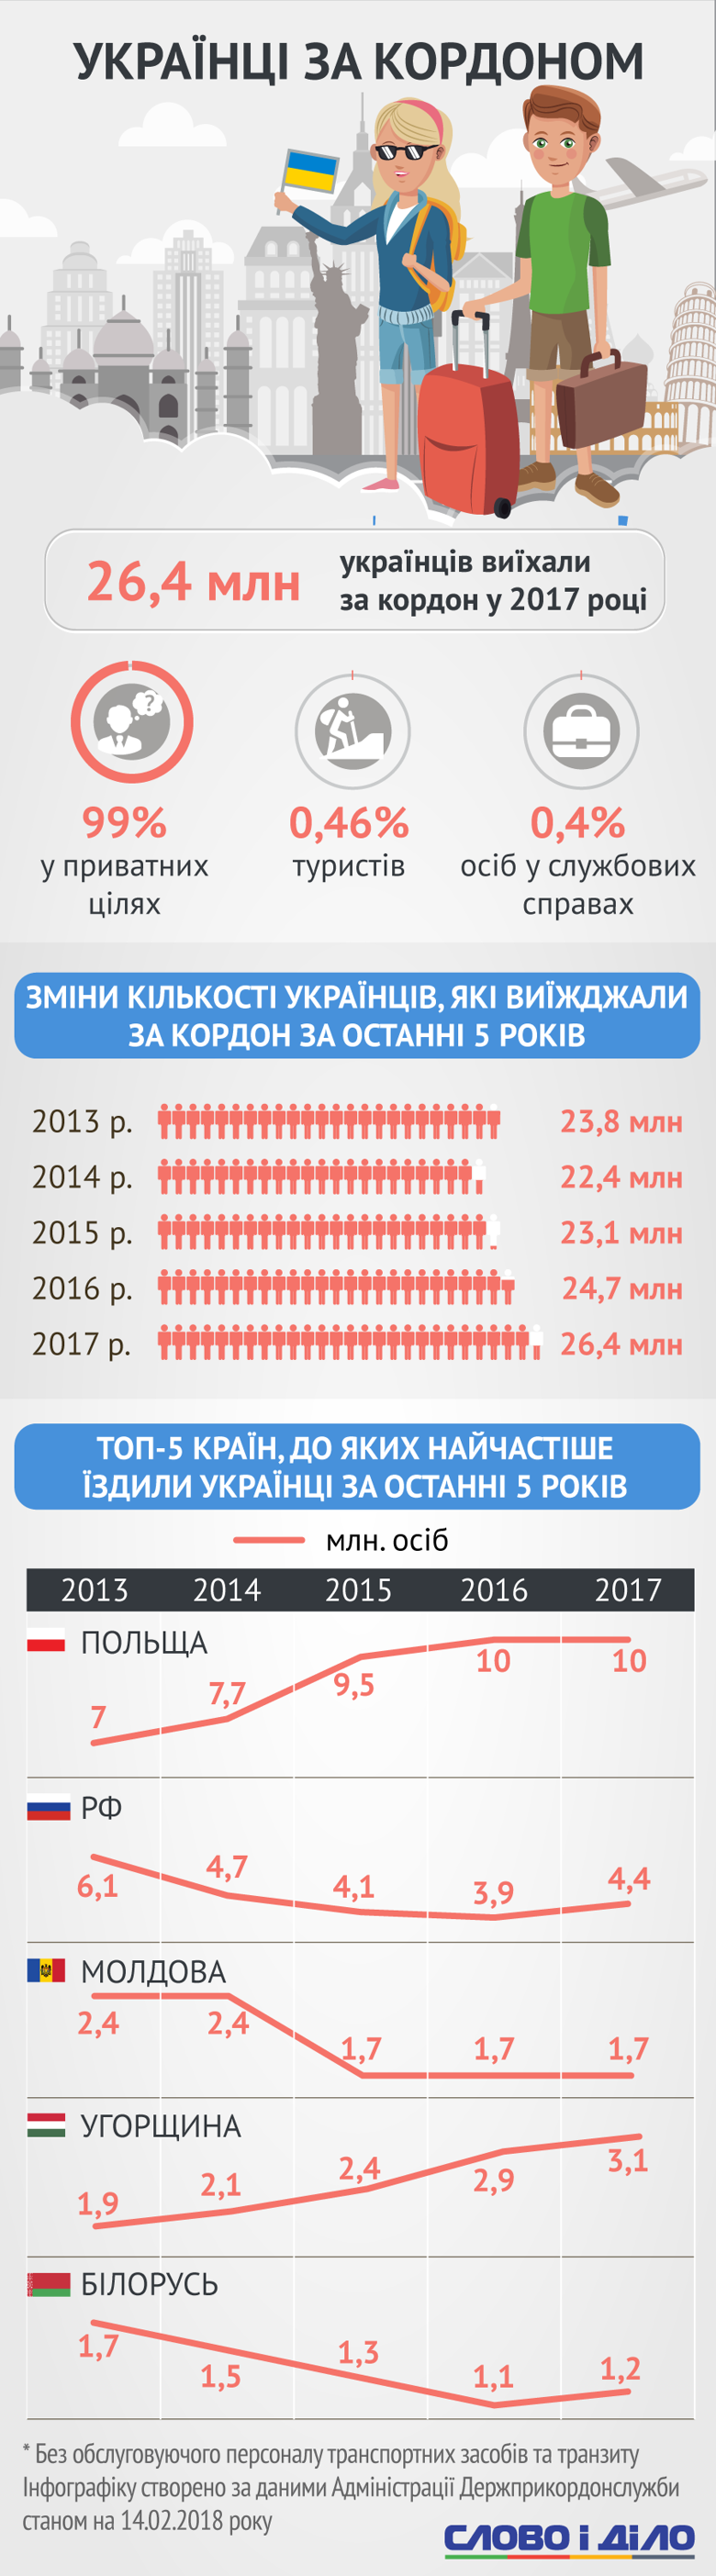 В Госстате подсчитали, сколько иностранцев побывало в Украине и смогли ли наши соотечественники сполна воспользоваться безвизом в 2017 году.